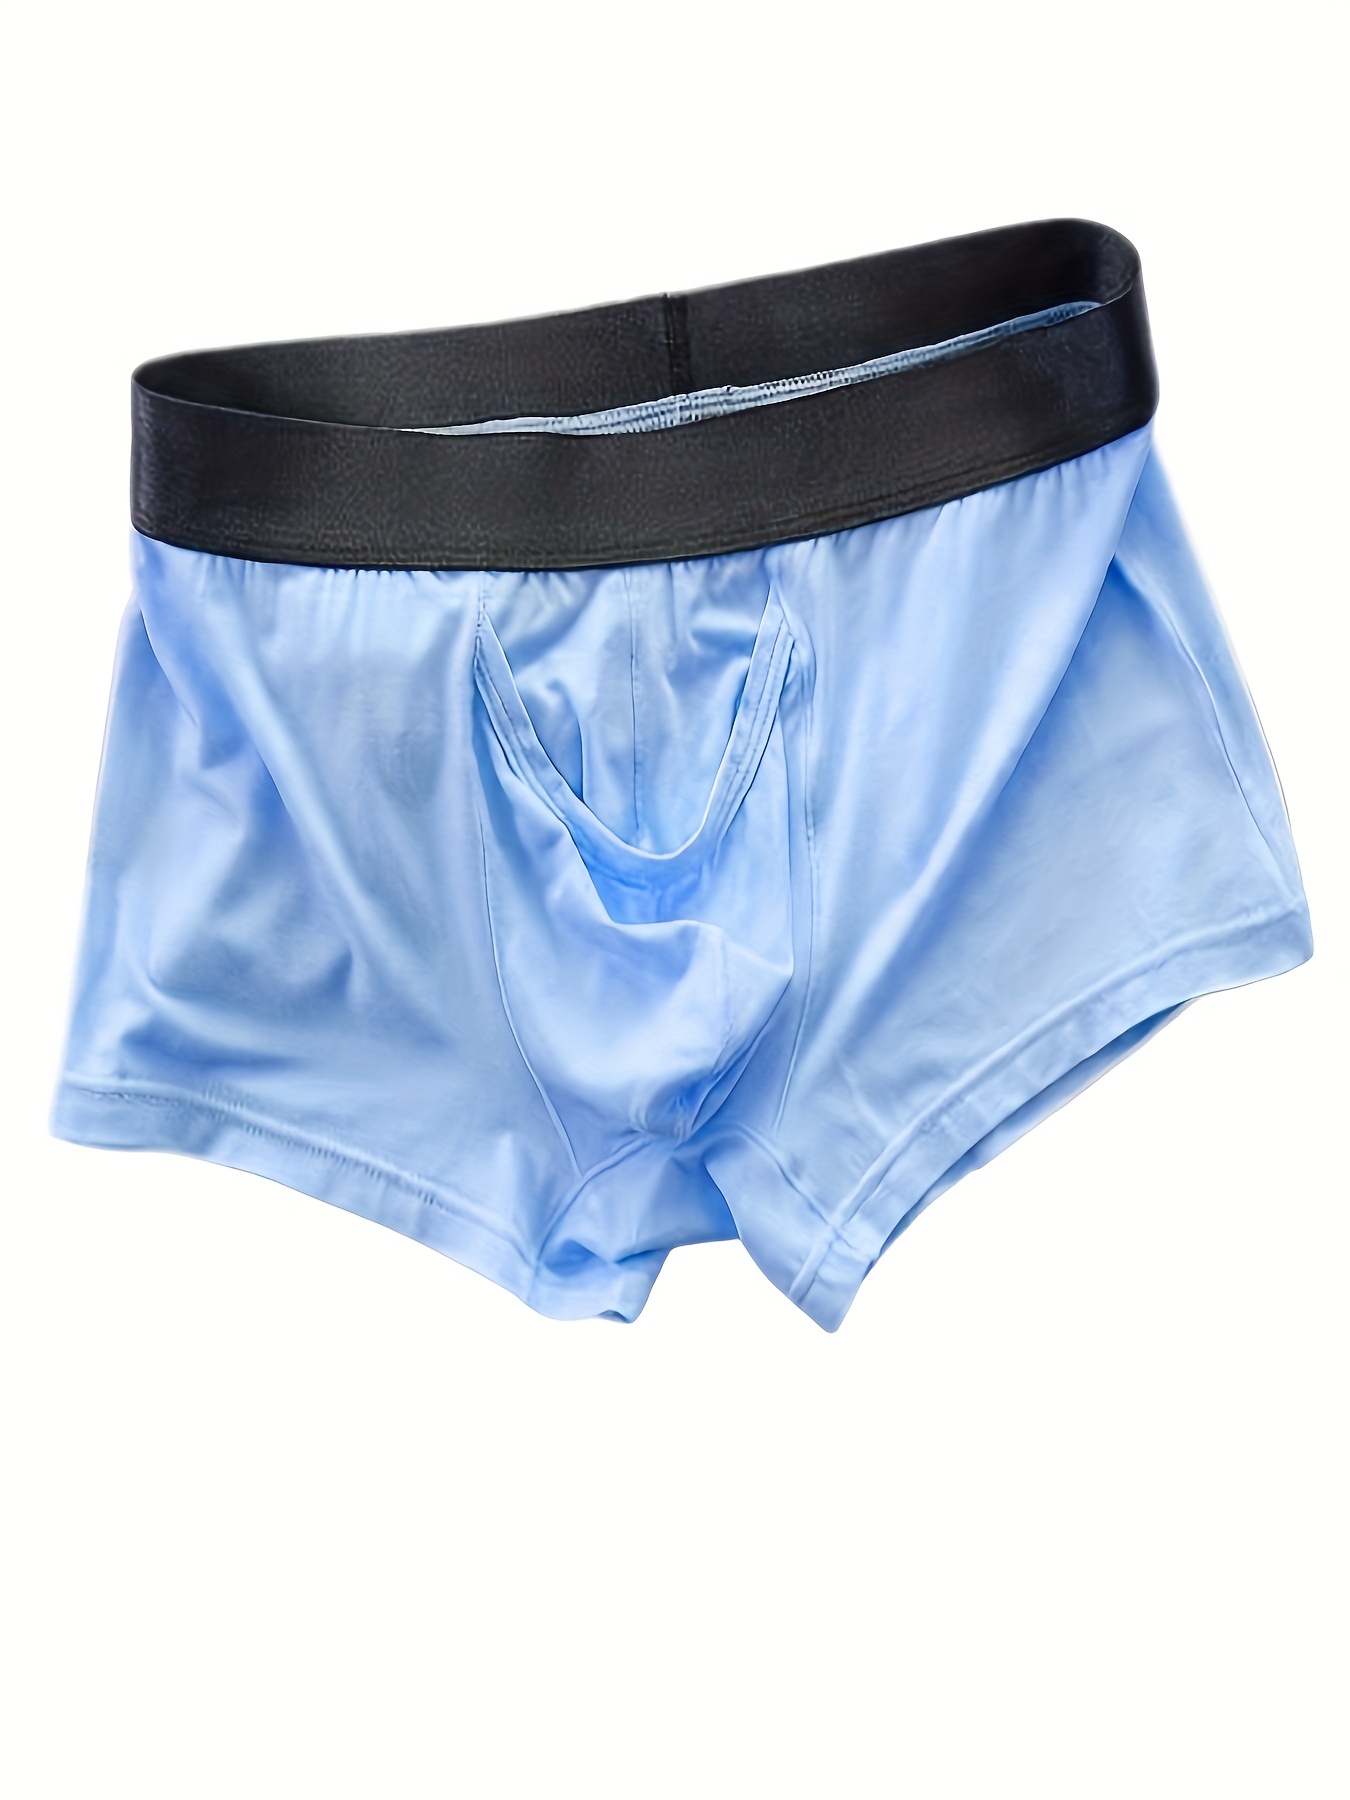 Underpants Low Rise Men 3D Elephant Nose Solid Color Briefs Quick